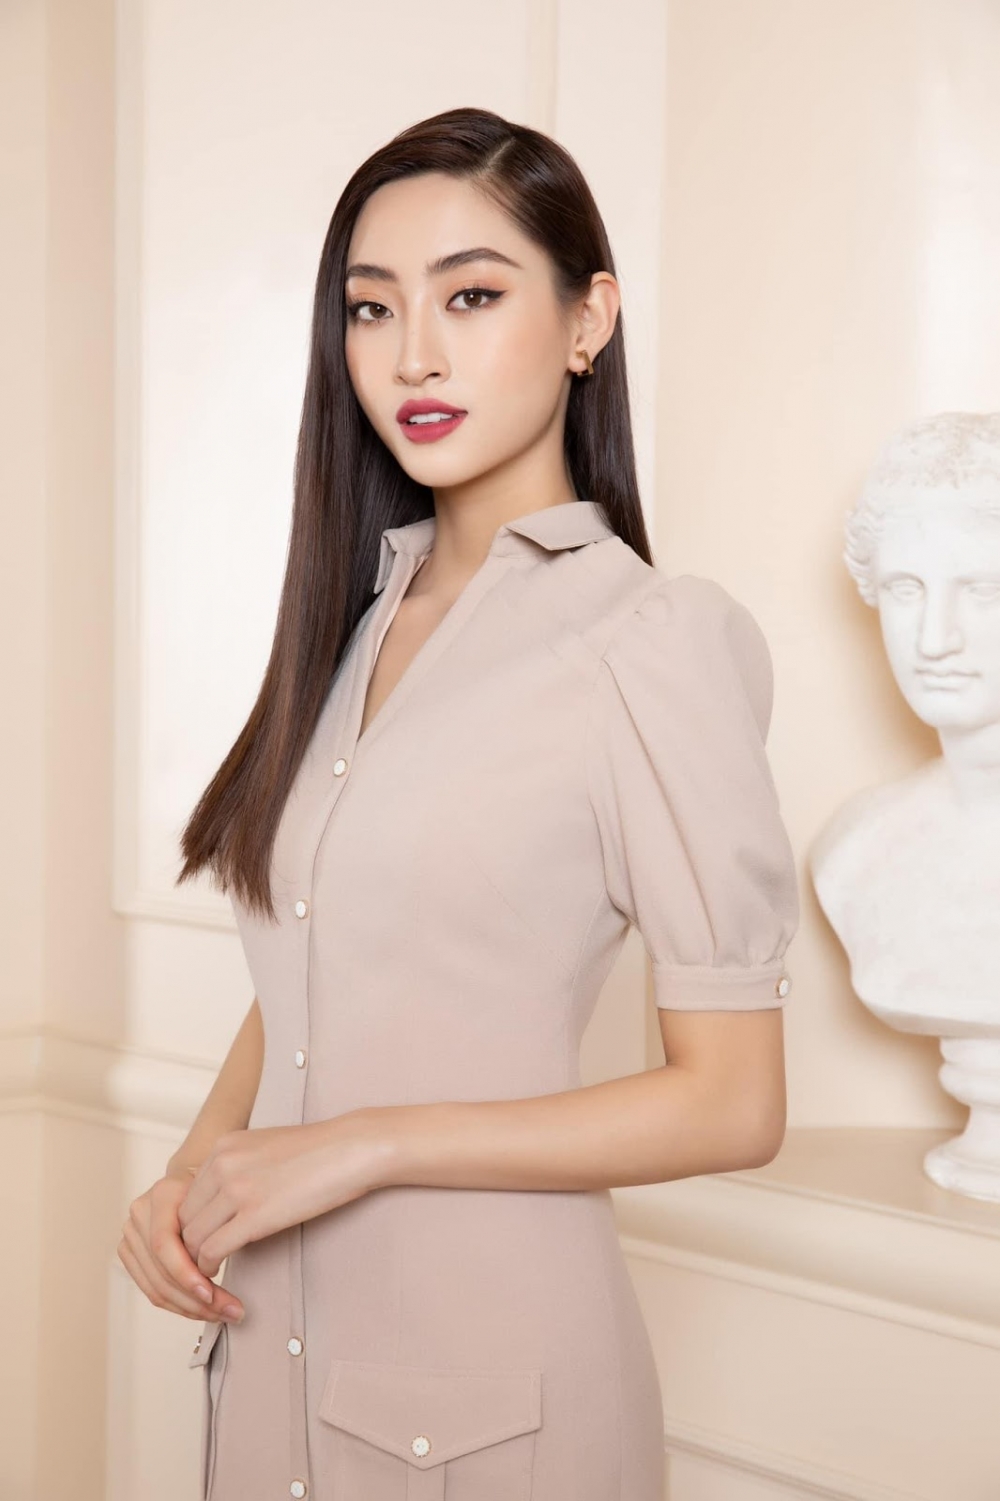 Hoa hậu Lương Thùy Linh nhậm chức giám đốc ở tuổi 21